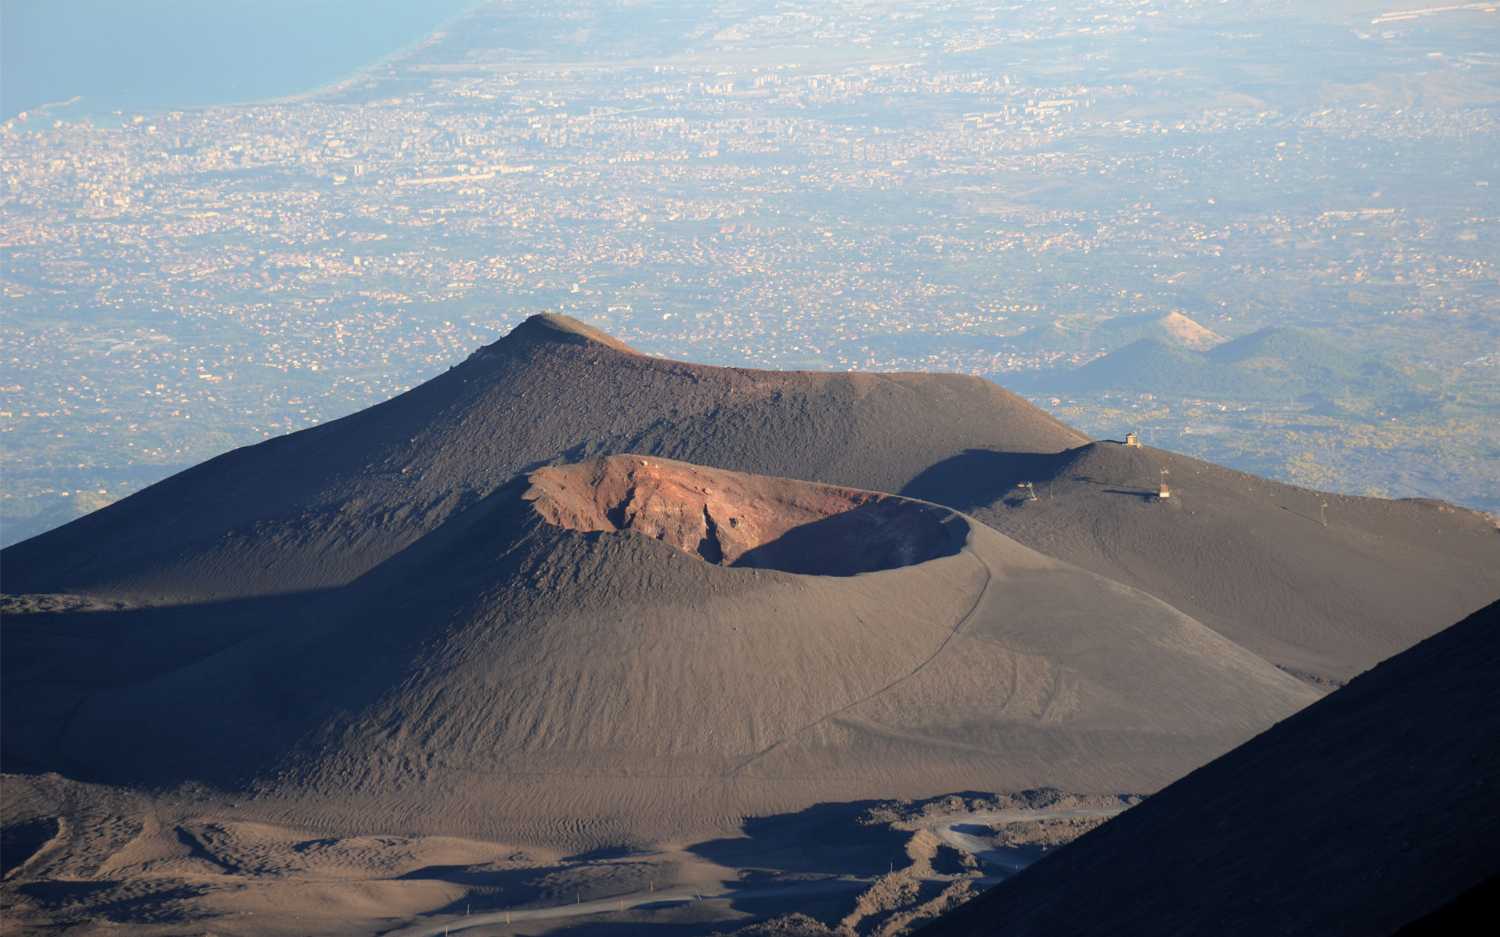 Siêu núi lửa Etna cao nhất nước Ý tự mọc thêm một cách đáng sợ